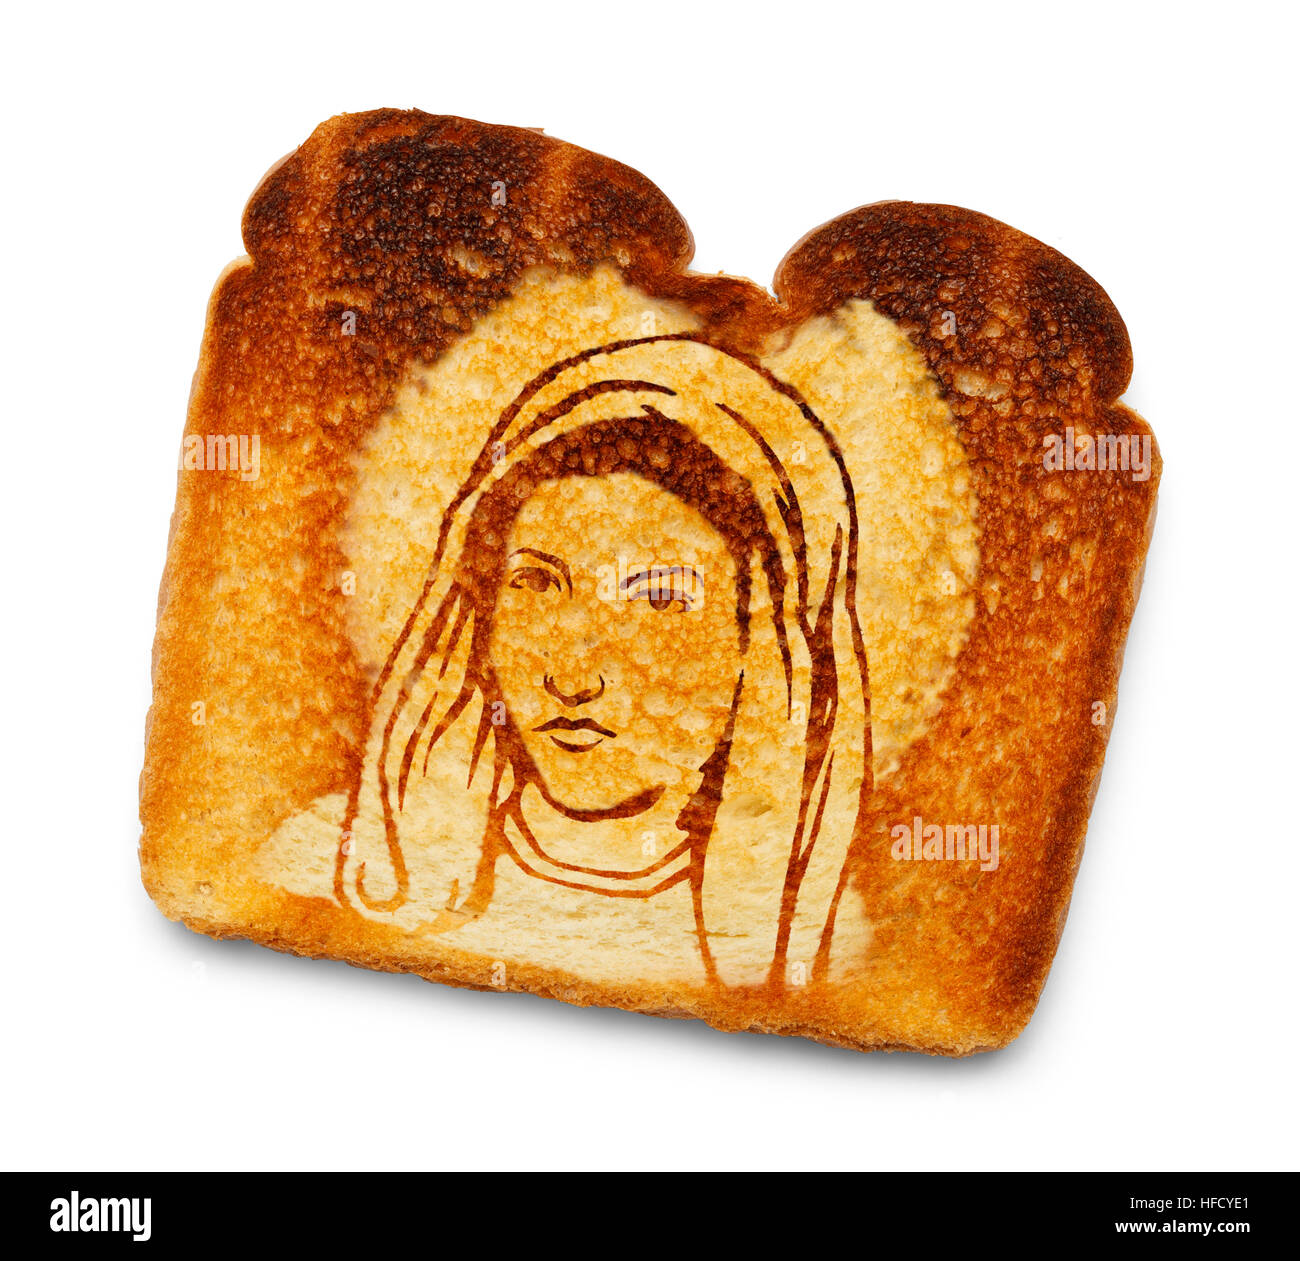 Virgin Mary Image on Burnt Toast Isolated on White Background. Stock Photo